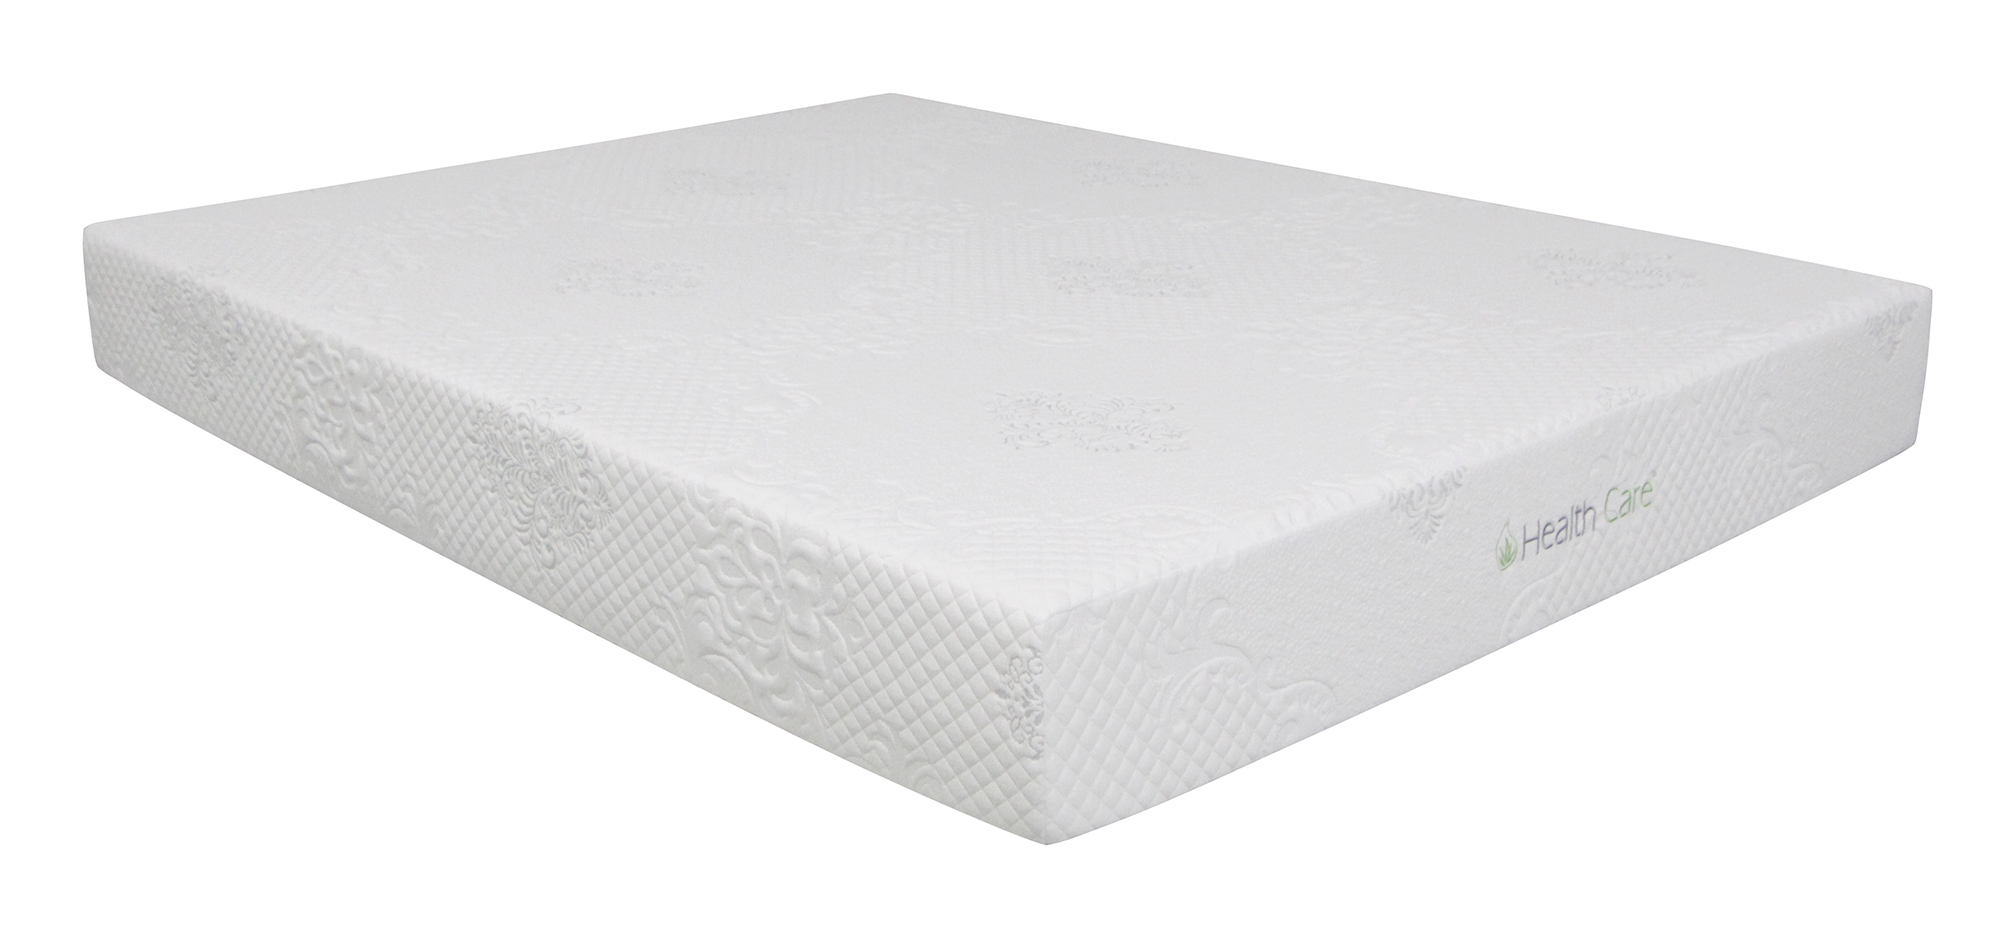 healthcare memory foam mattress warranty